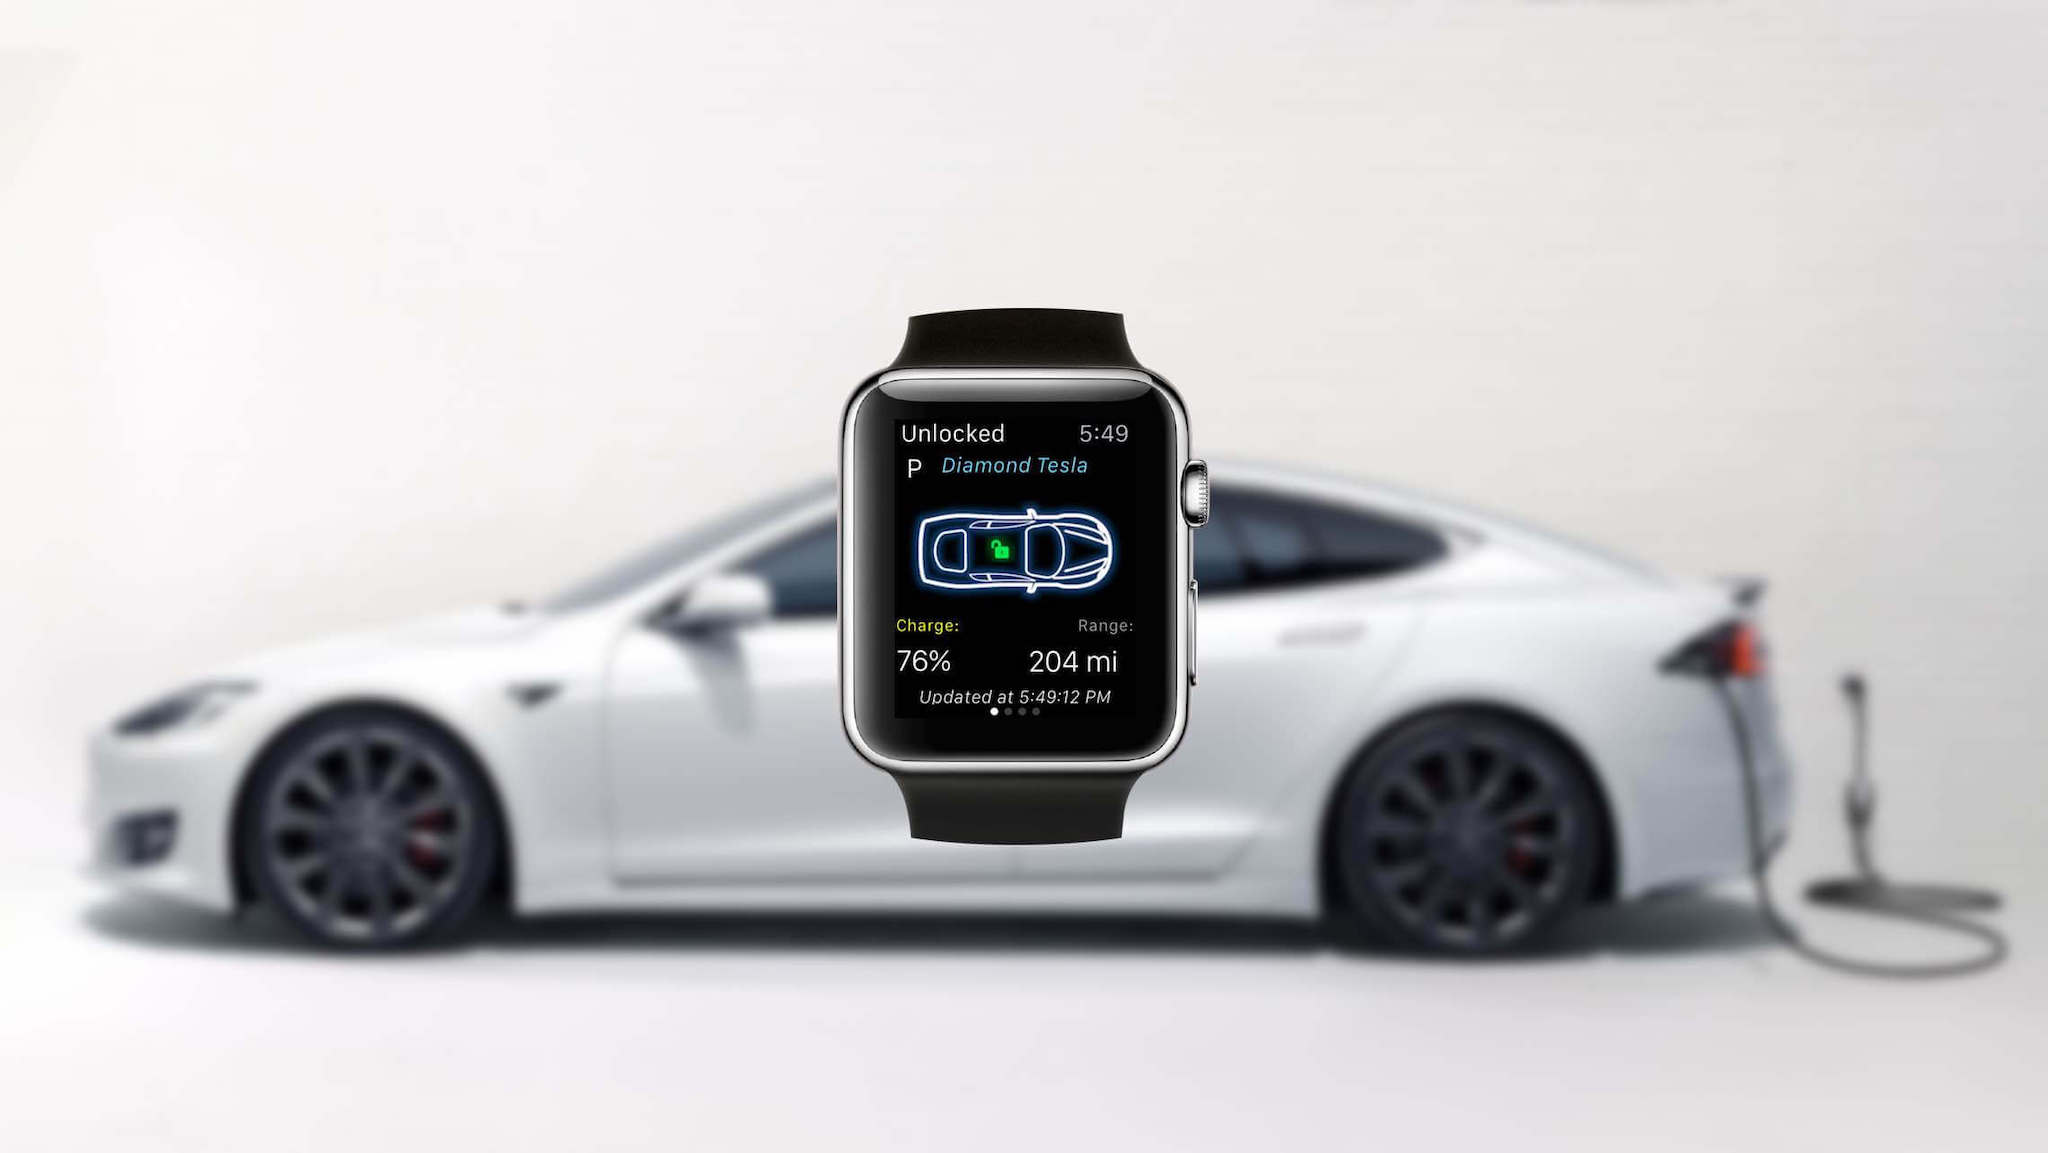 Tính năng "CarKey" mới trong iOS 13.4 beta, iPhone và Apple Watch có thể làm chìa khoá thông minh